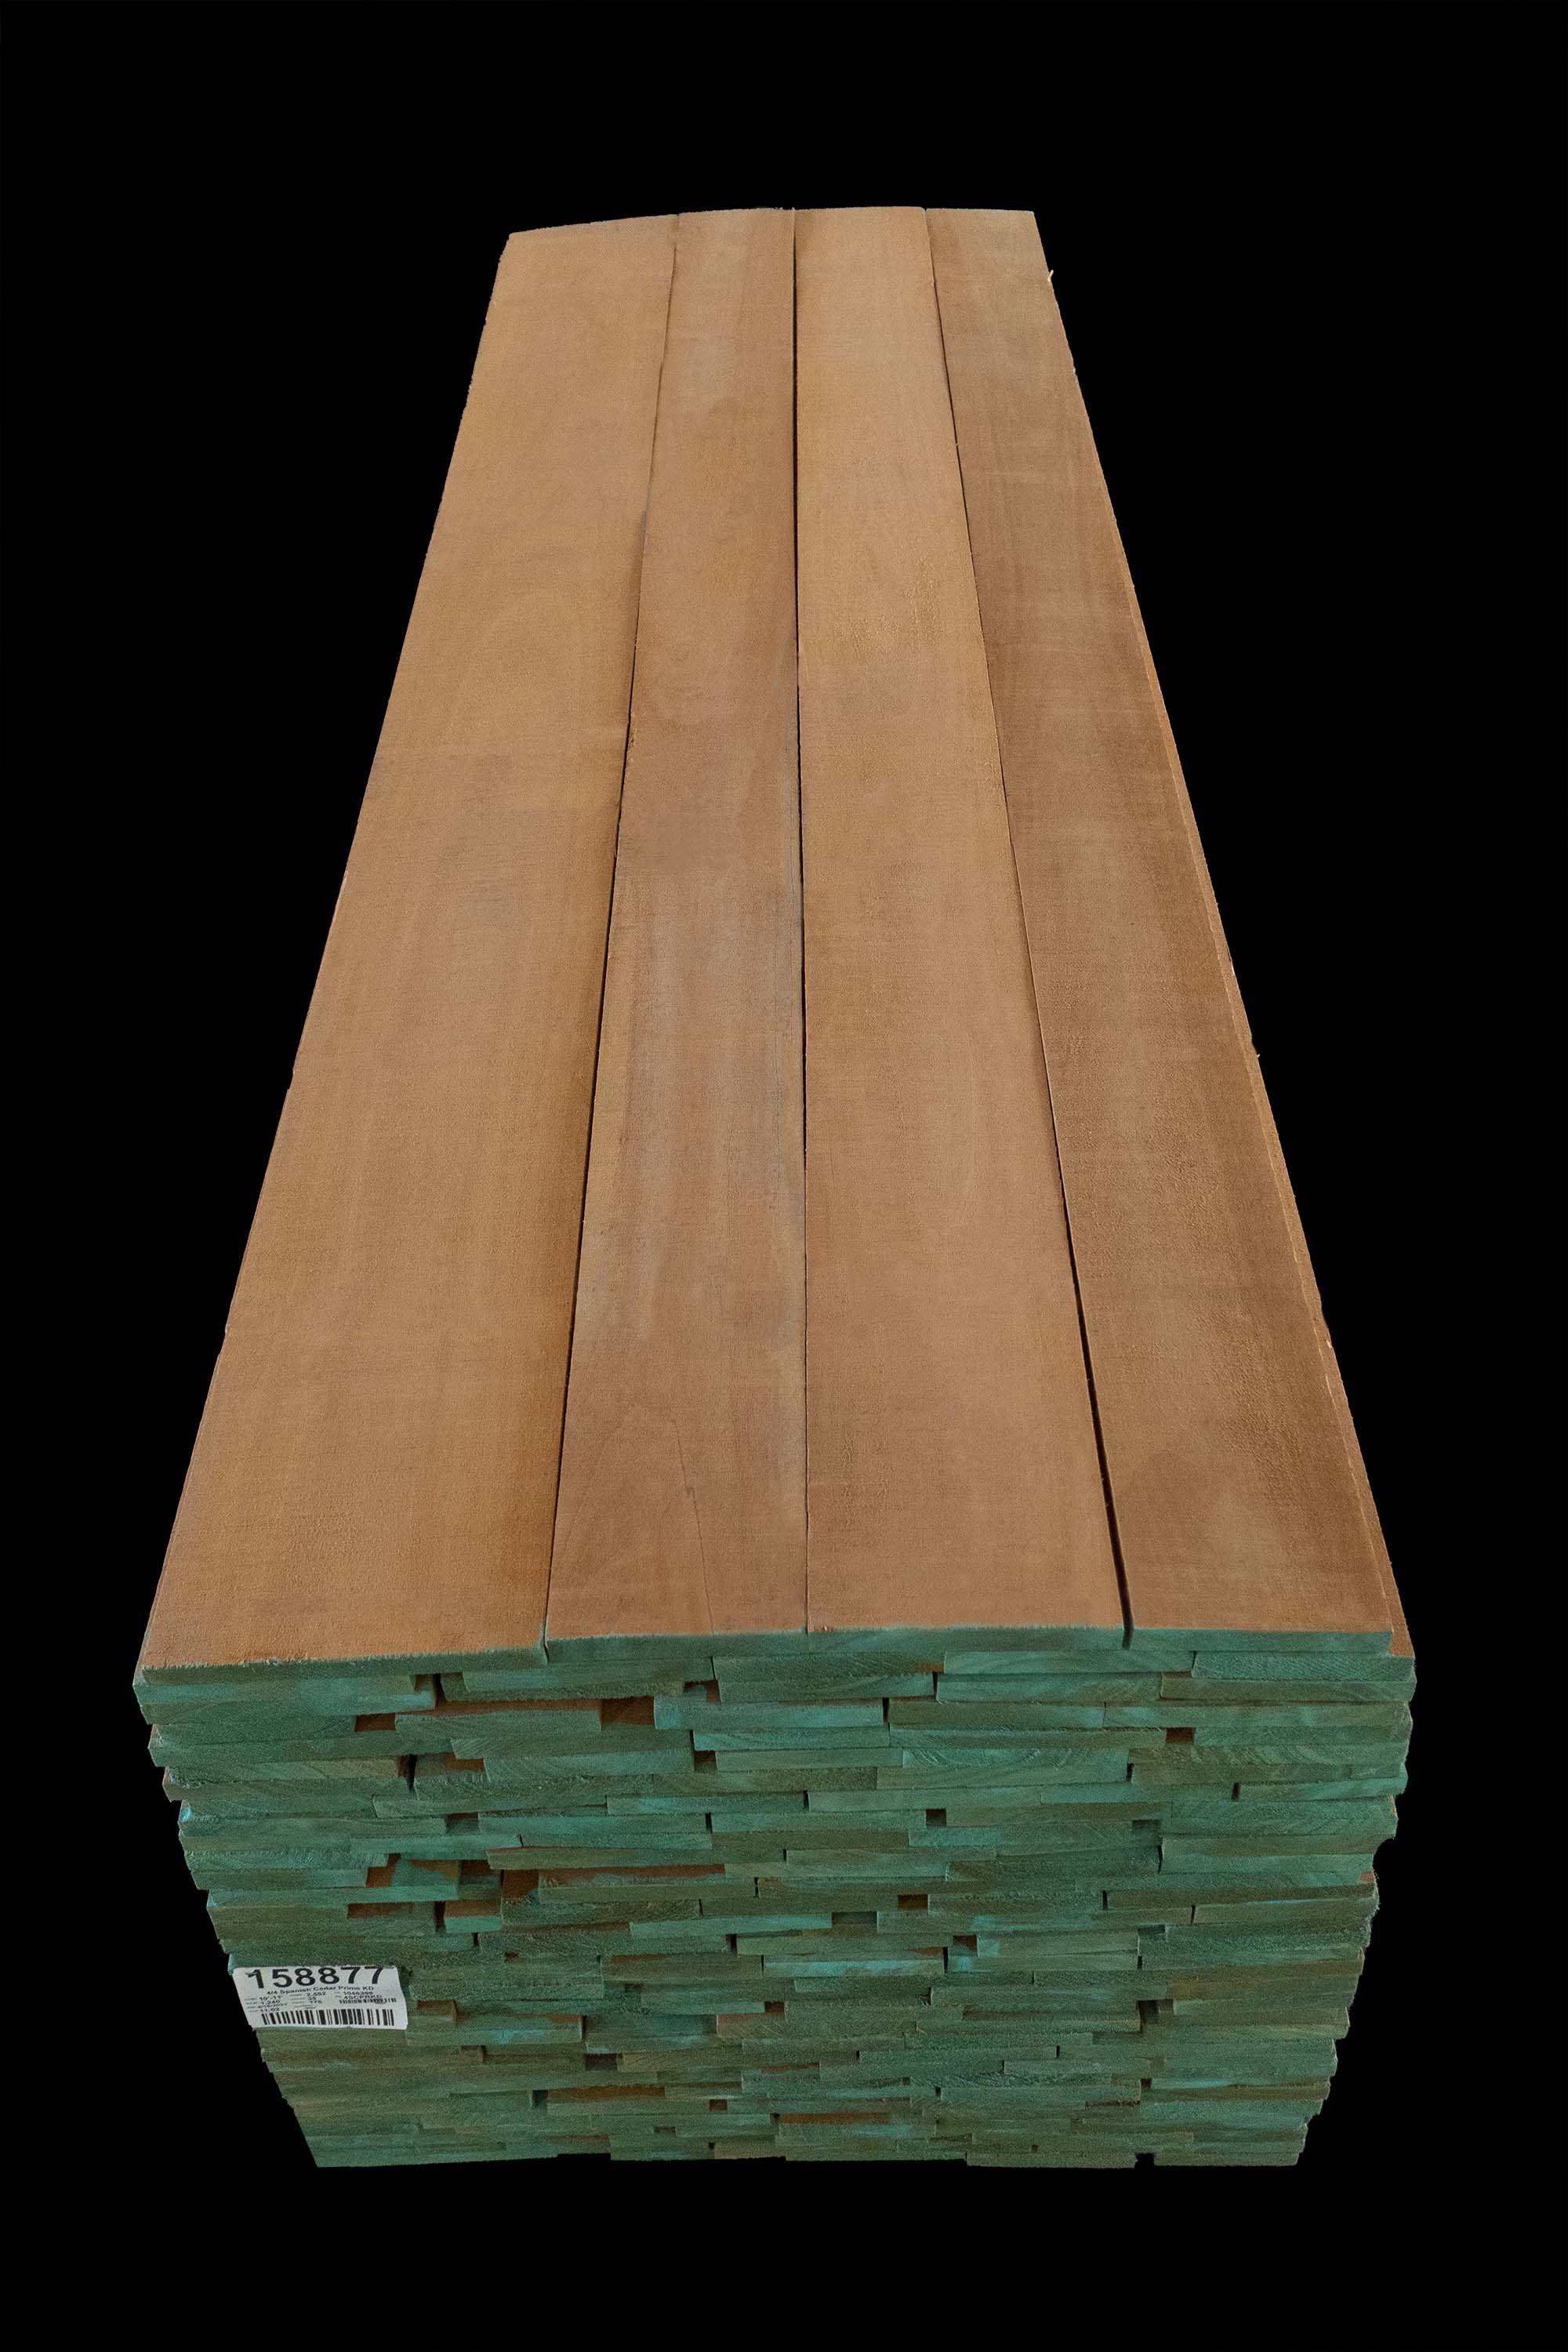 african mahogany vs genuine mahogany